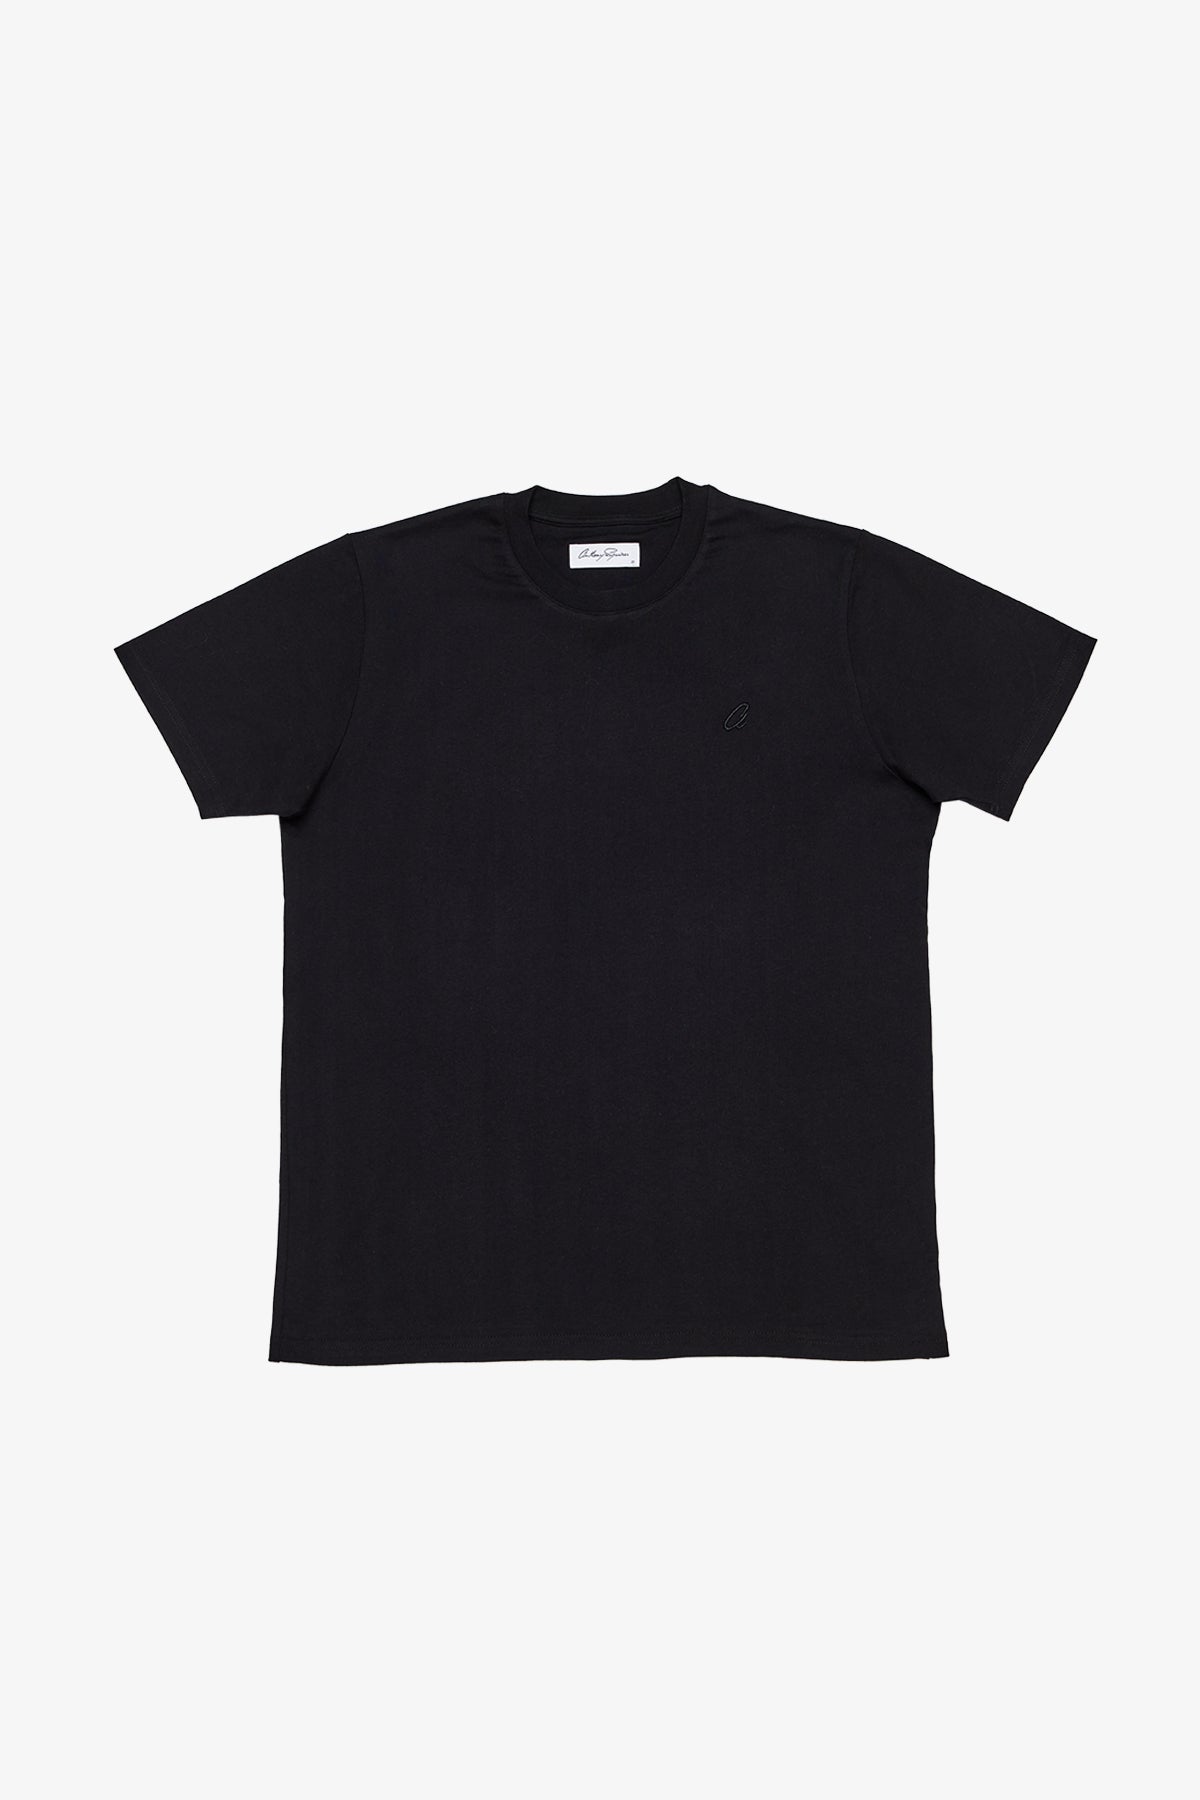 Edan - Black T-shirt